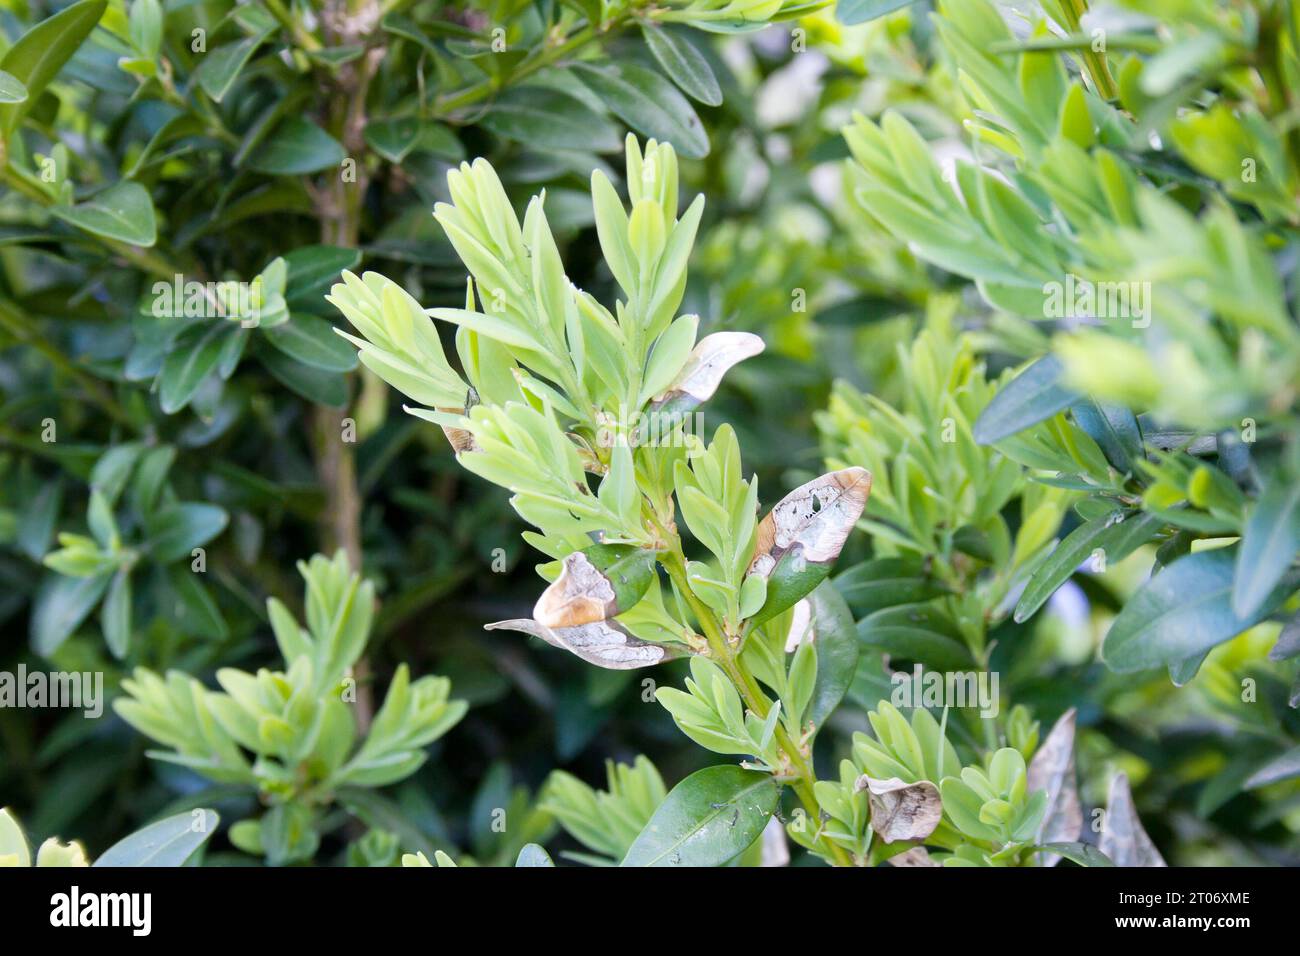 Junge Buxus-Blätter werden von der Kastenmotte raupe gegessen, dem größten Buxus-Schädling. Invasive Arten in Europa. Gefährlicher Gartenschädling. Weichzeichner. Stockfoto